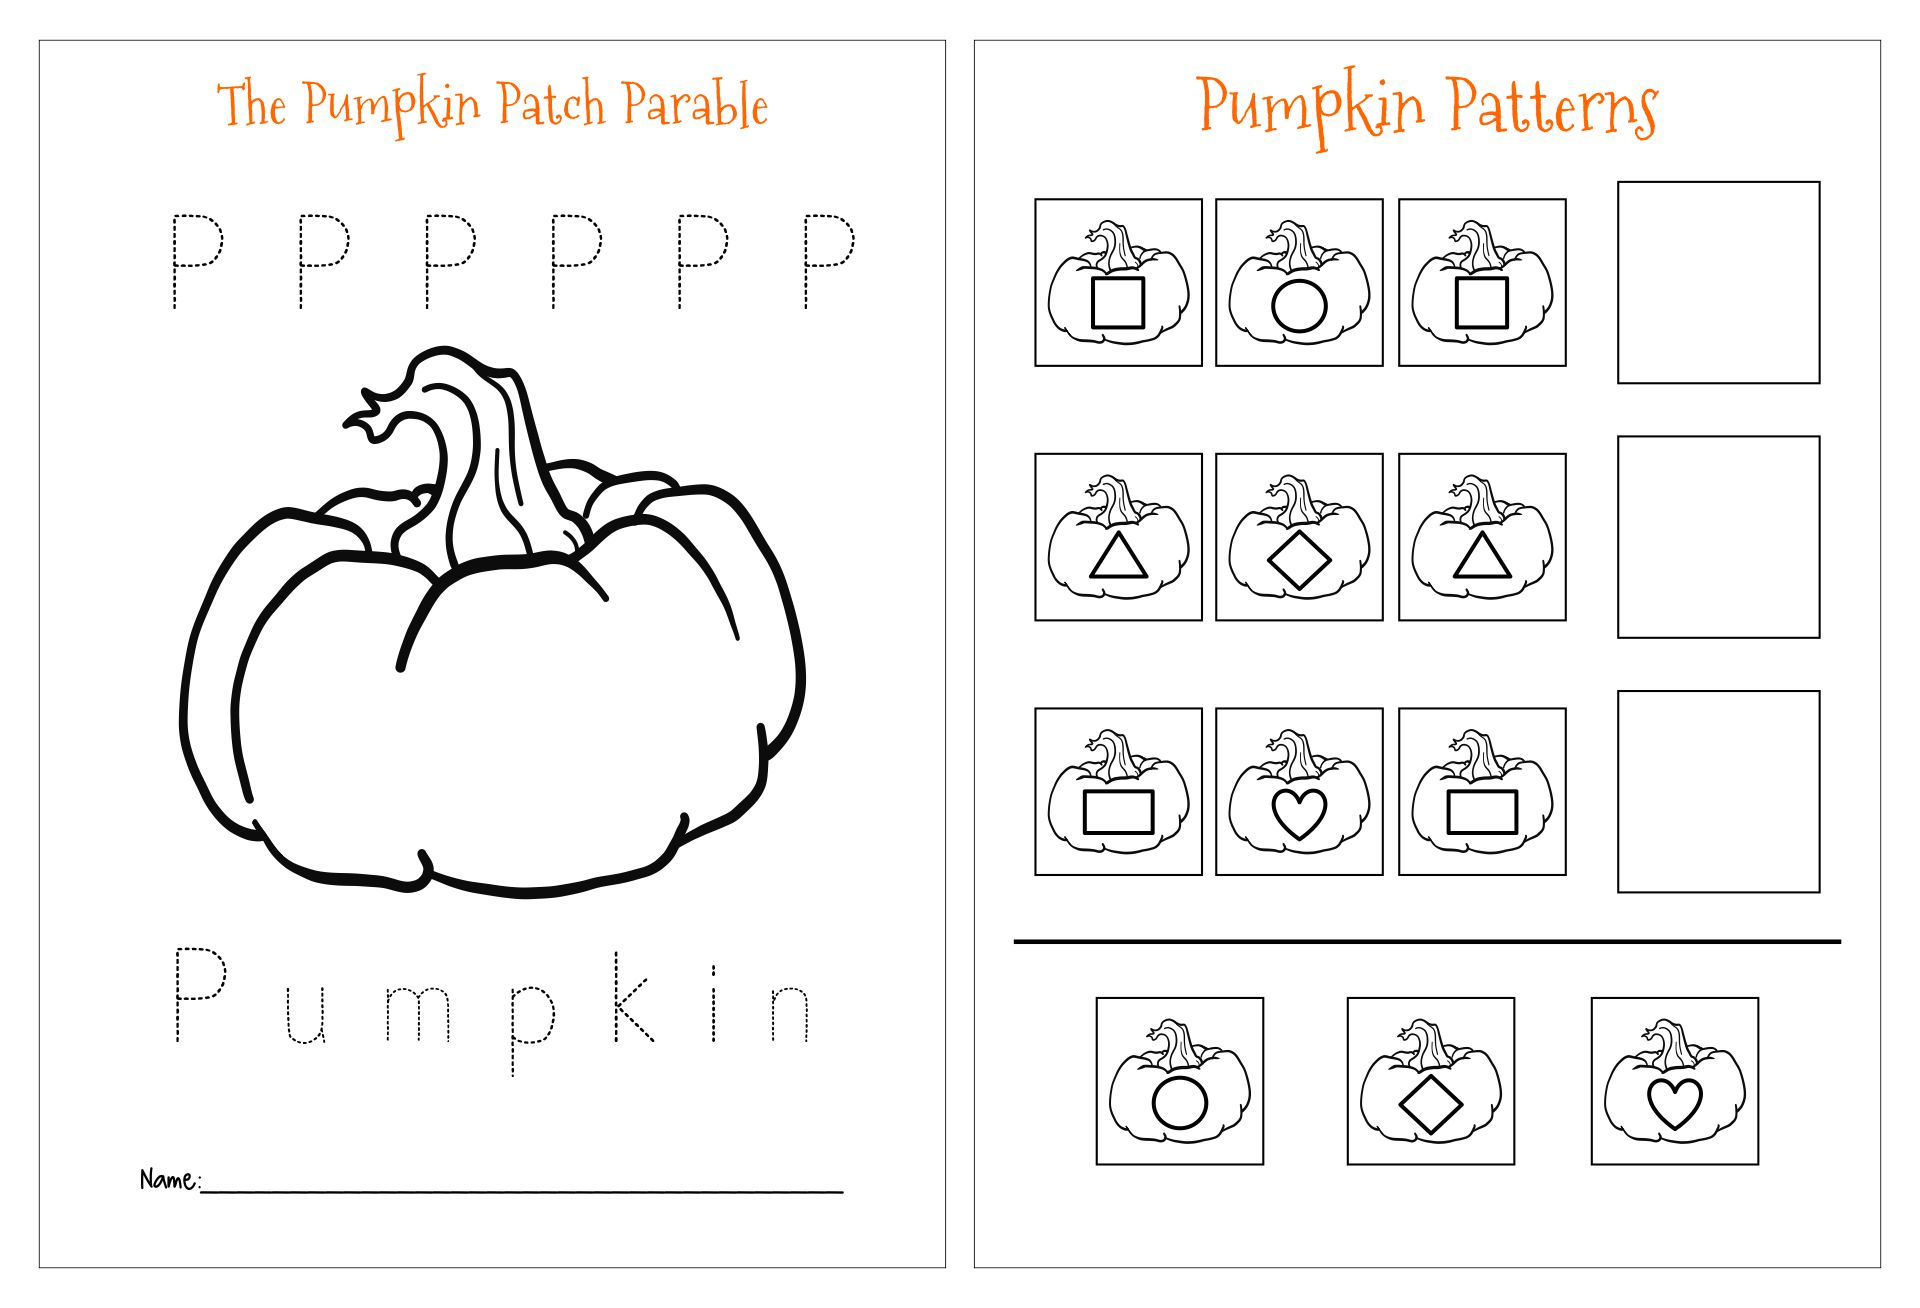 Pumpkin Patch Parable Printable